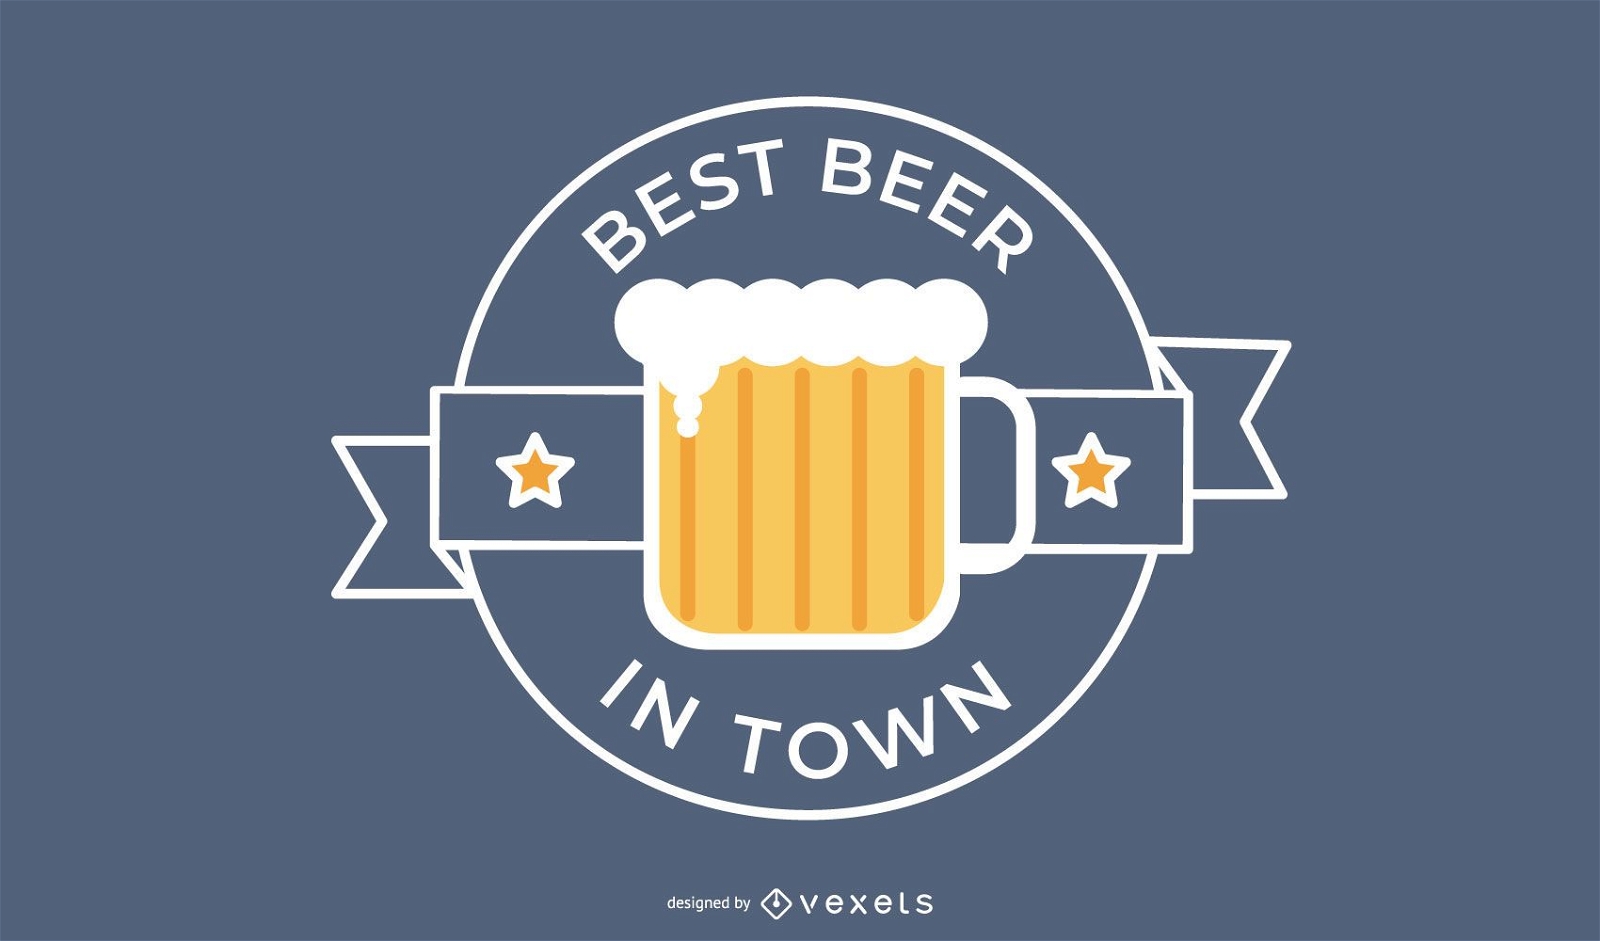 Best beer logo design